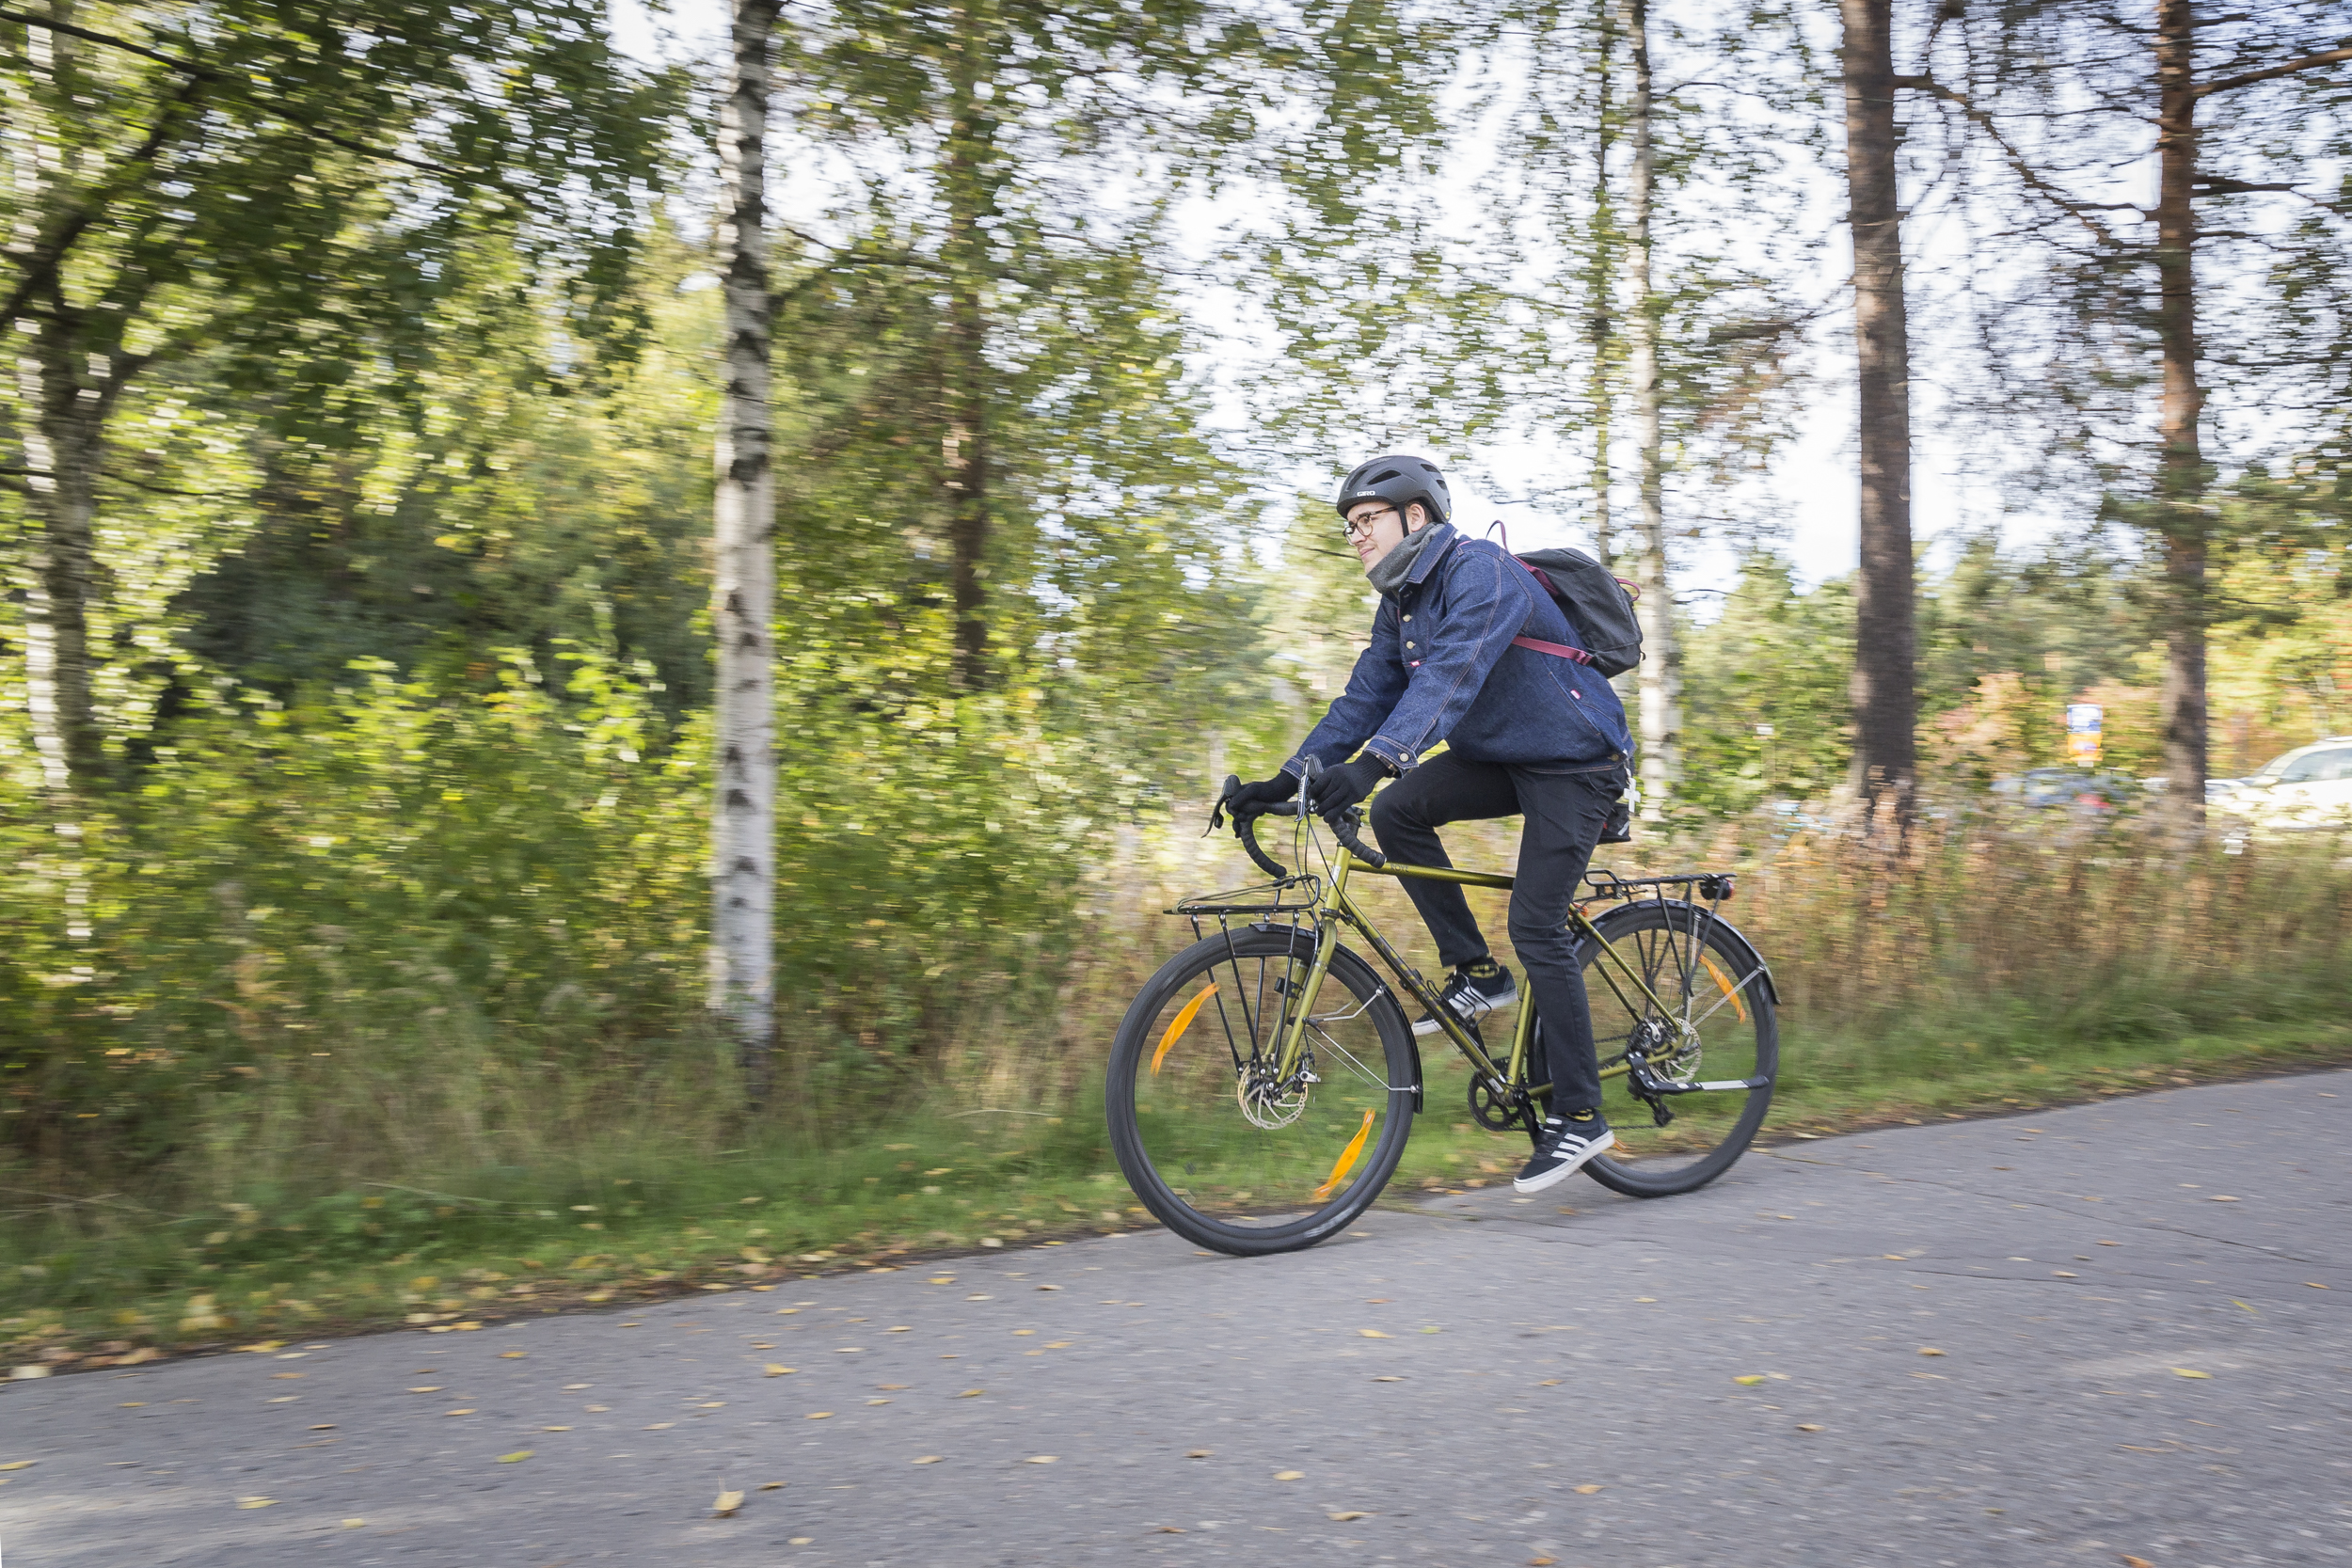 Kemian opiskelija Antti Nurmesjärvi pyöräilee paitsi arjessa, myös harrastuksenaan. Hän myös huoltaa pyöränsä itse.